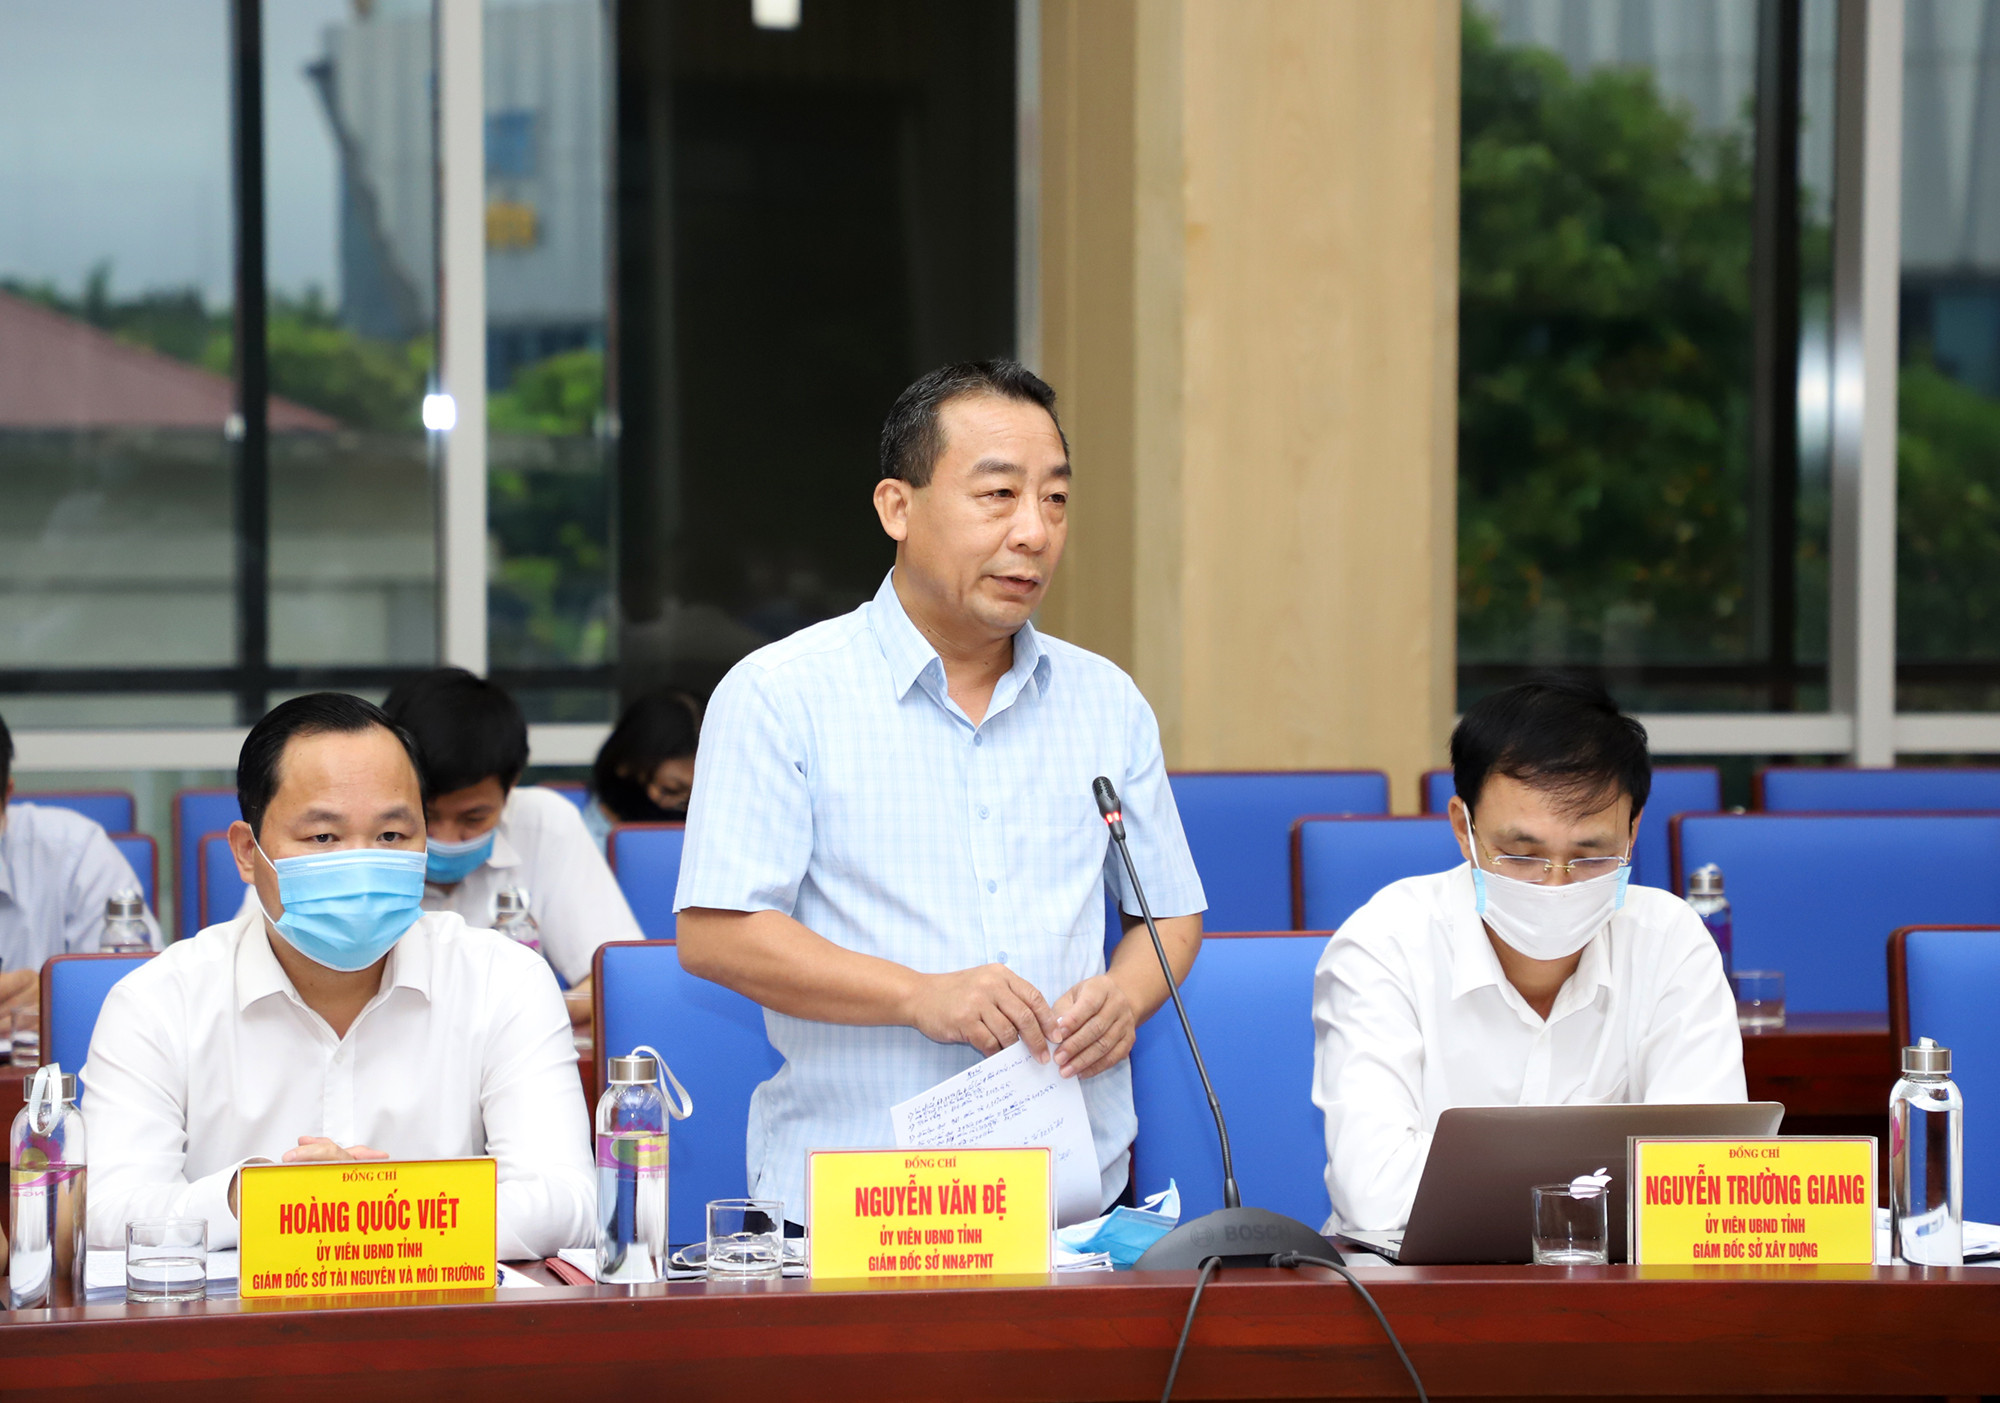 Ông Nguyễn Văn Đệ - Giám đốc Sở NN&PTNT báo cáo kết quả của ngành nông nghiệp. Ảnh: Phạm Bằng